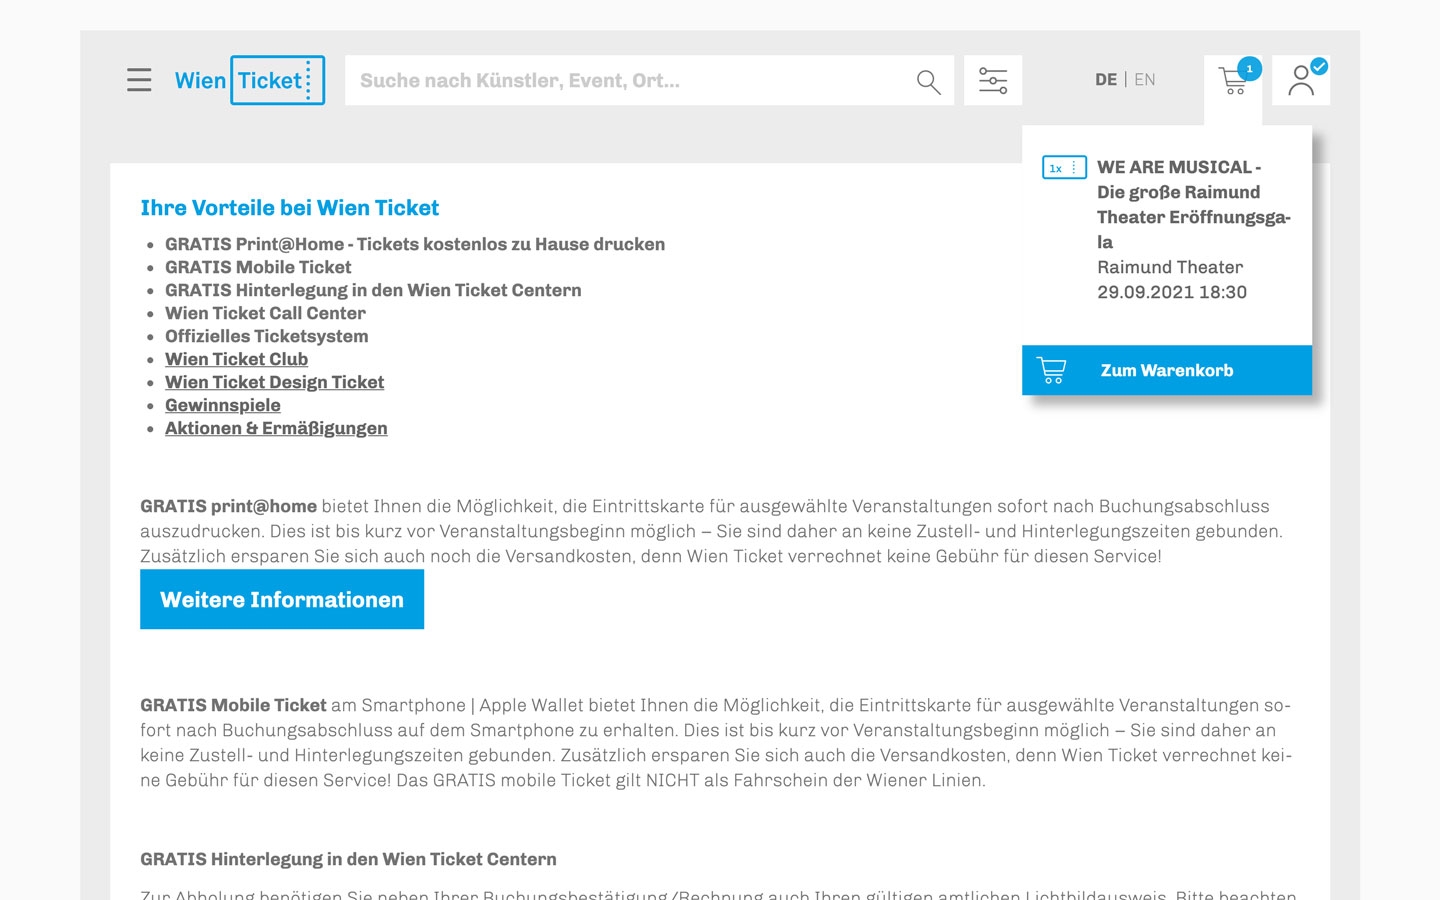 WT Wien Ticket | wien-ticket.at | 2021 (Screen Only 02) © echonet communication GmbH